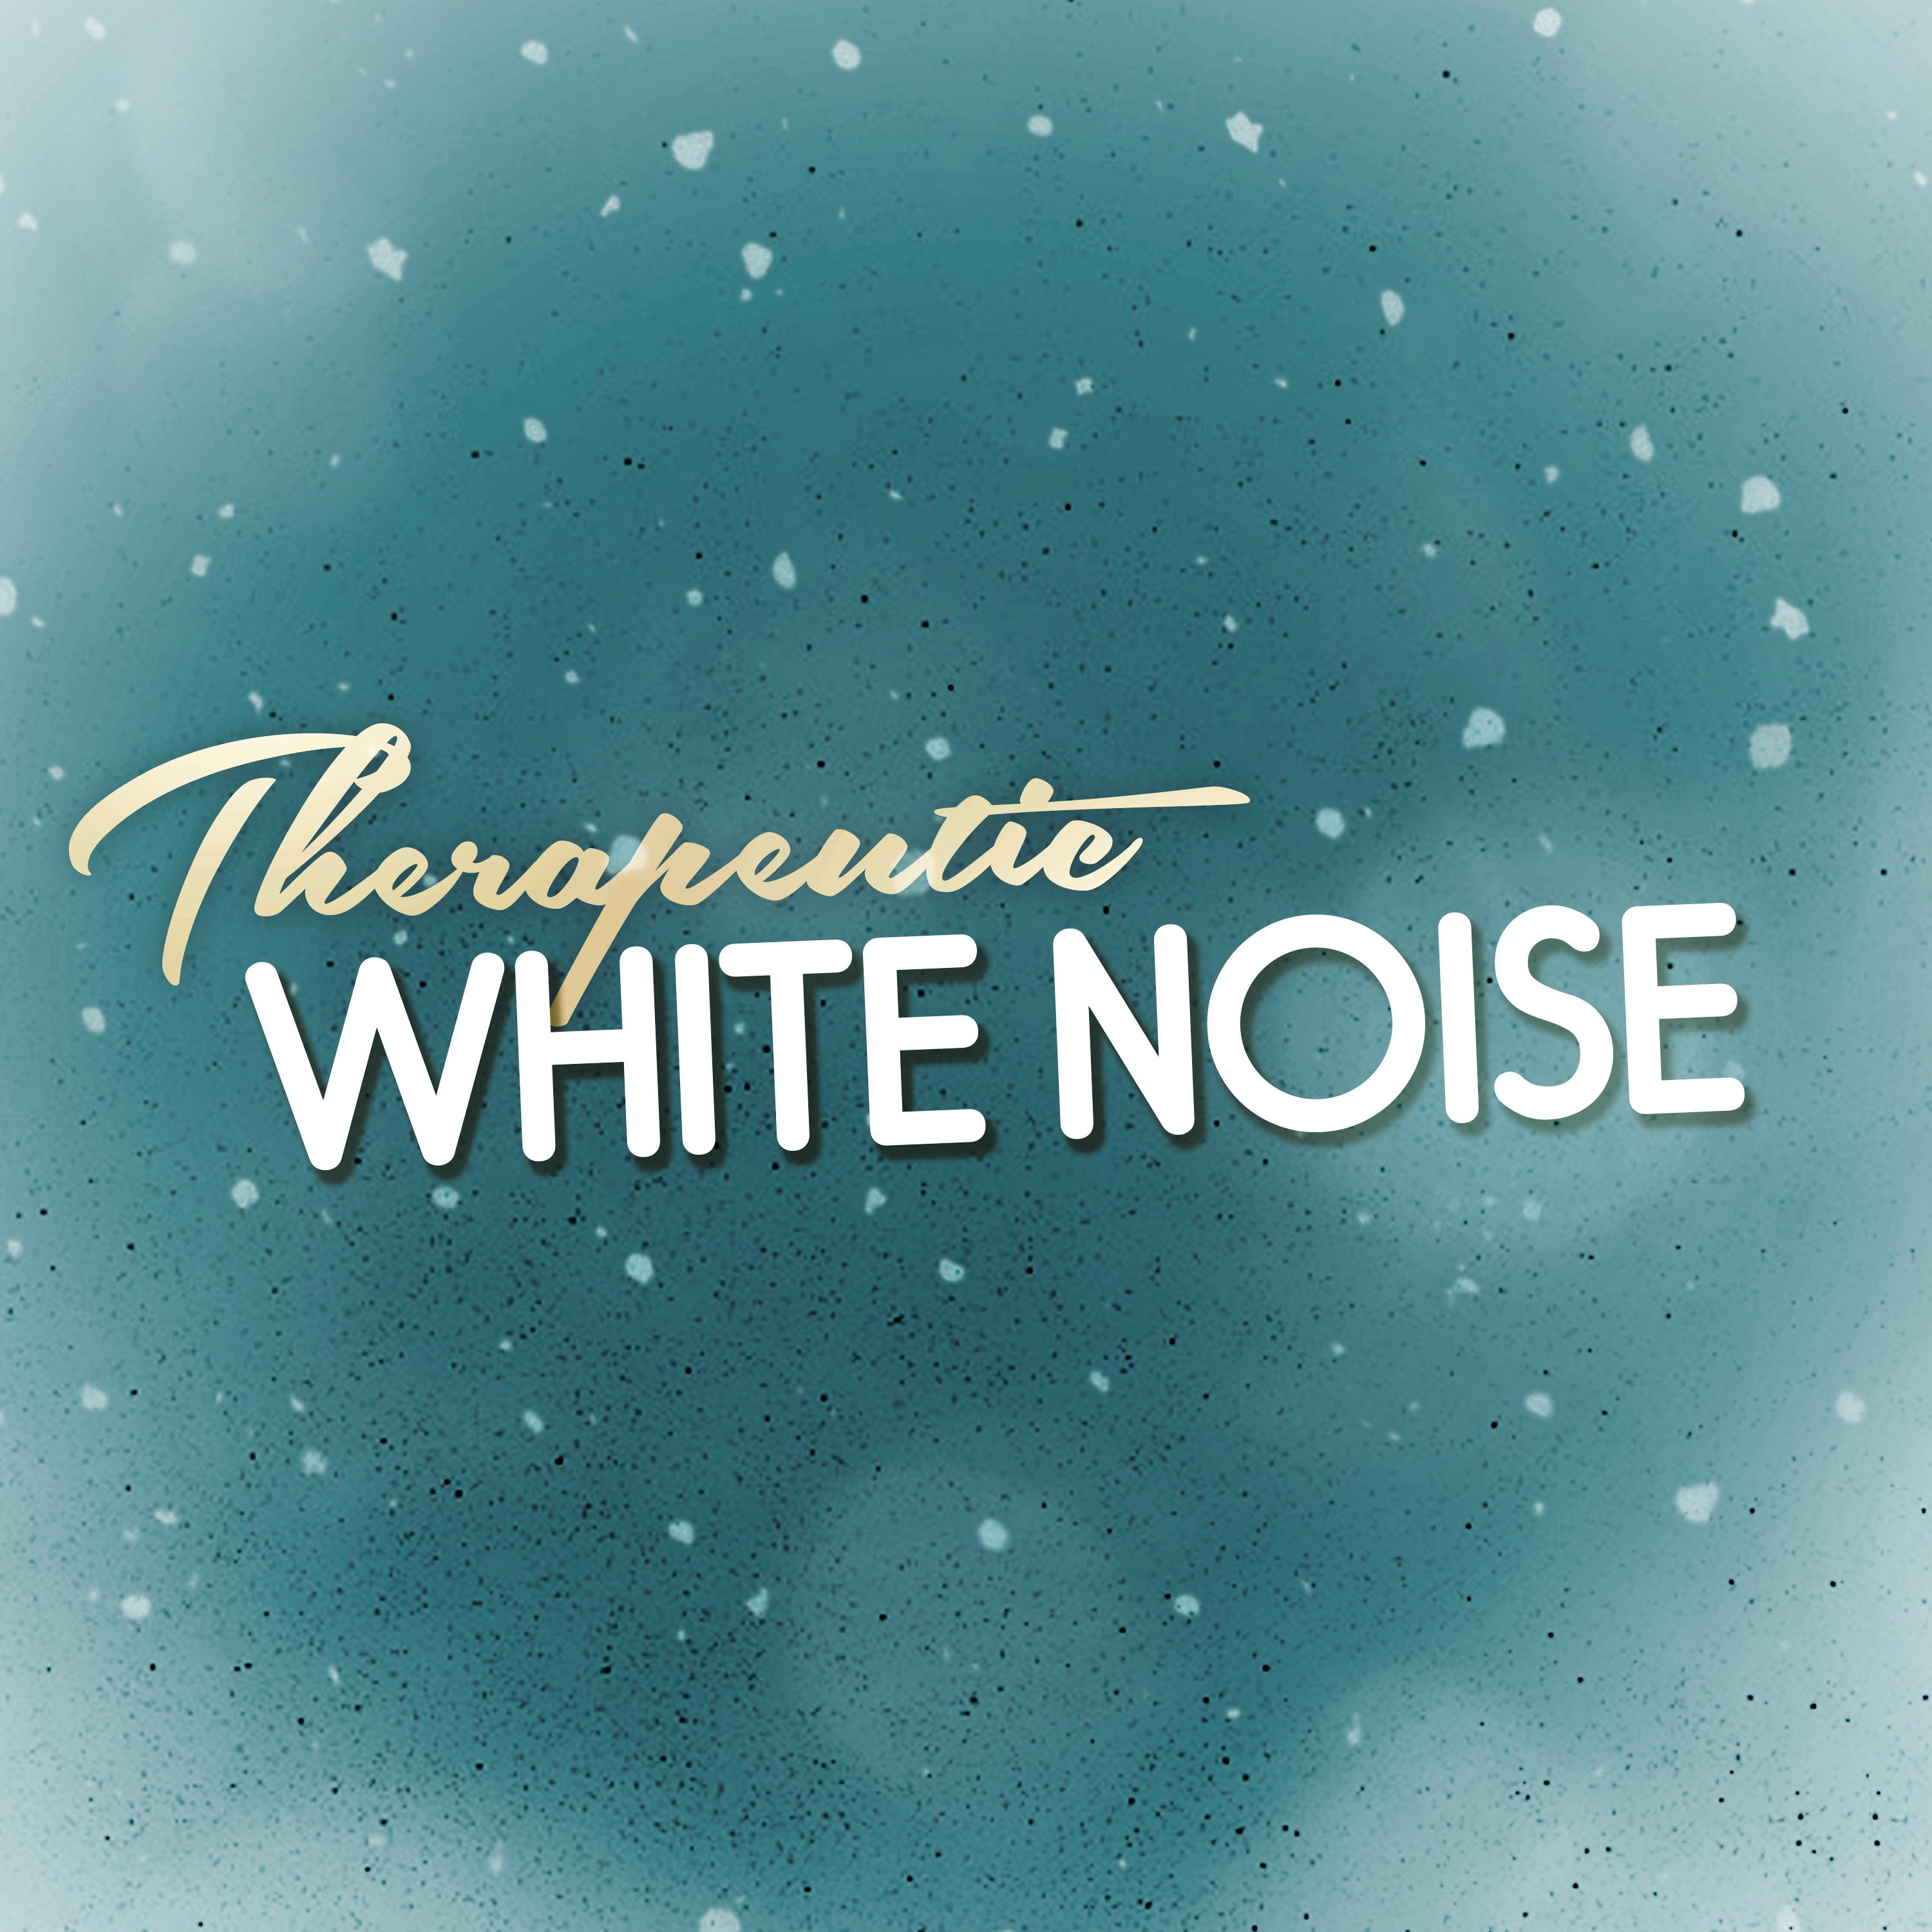 Therapeutic White Noise